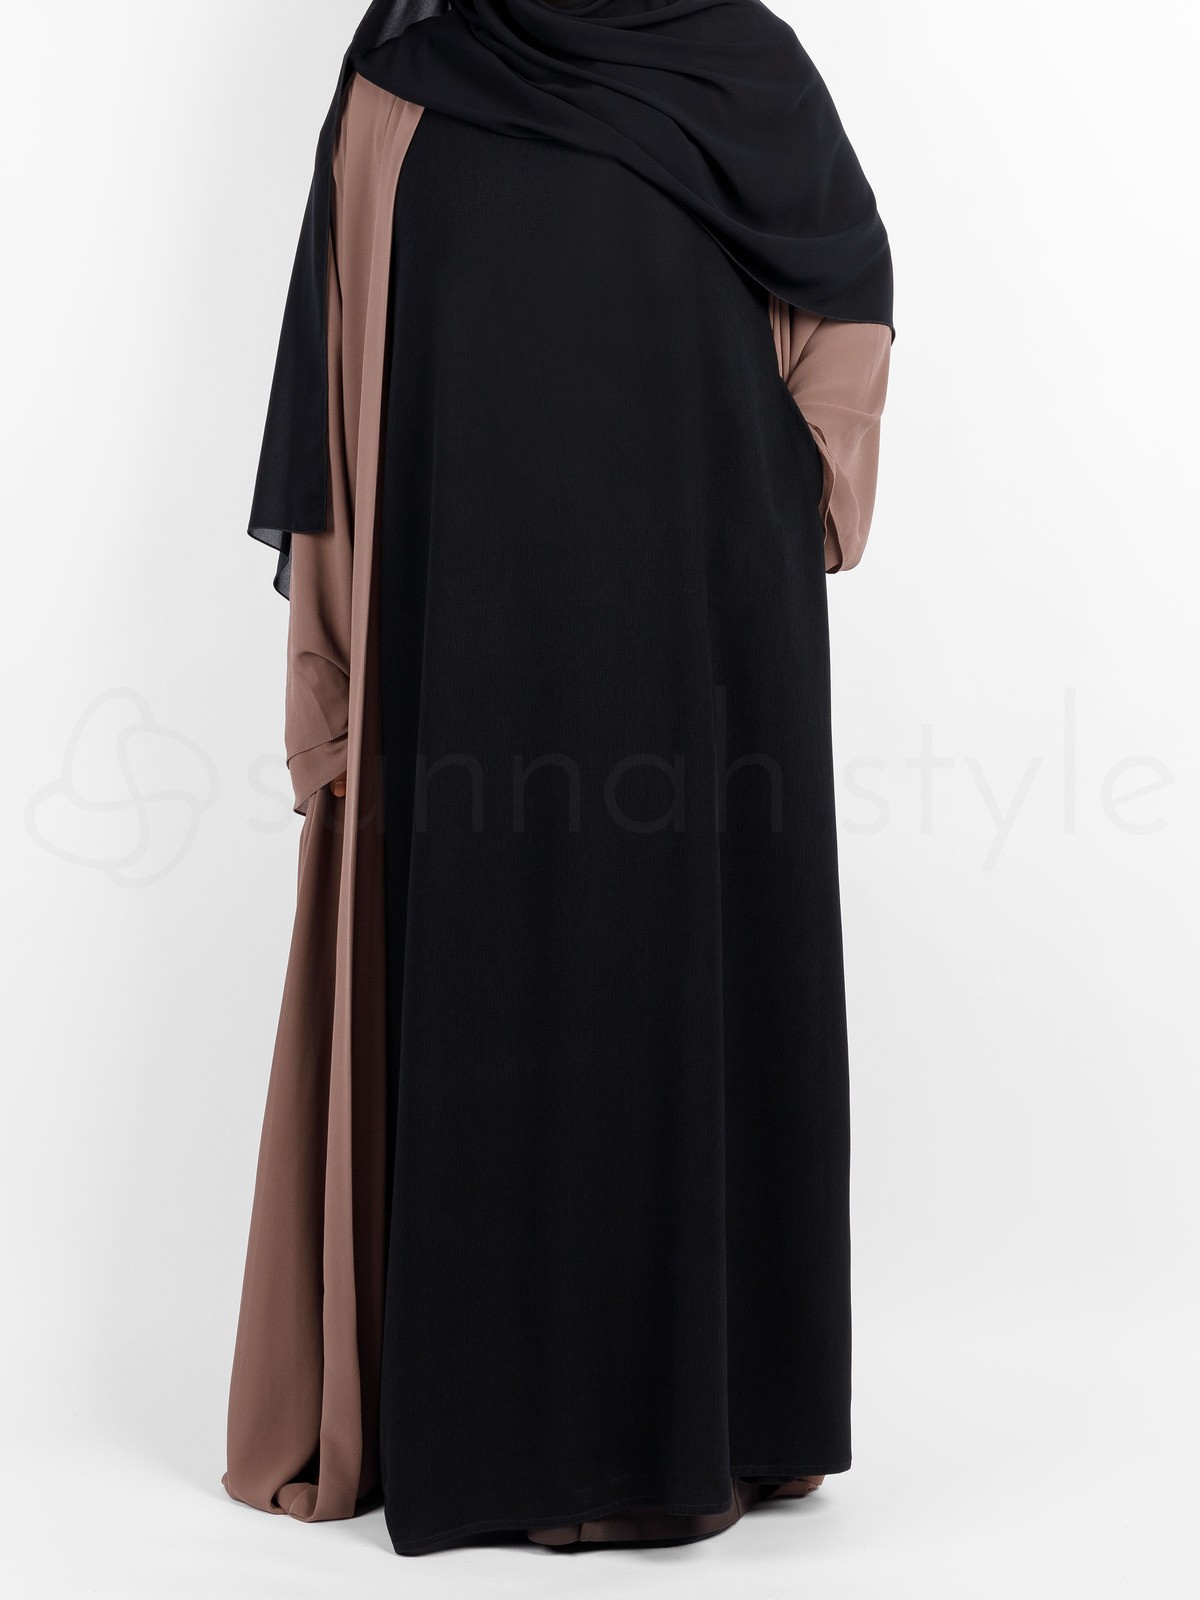 Sunnah Style - Brushed Sleeveless Abaya (Black)